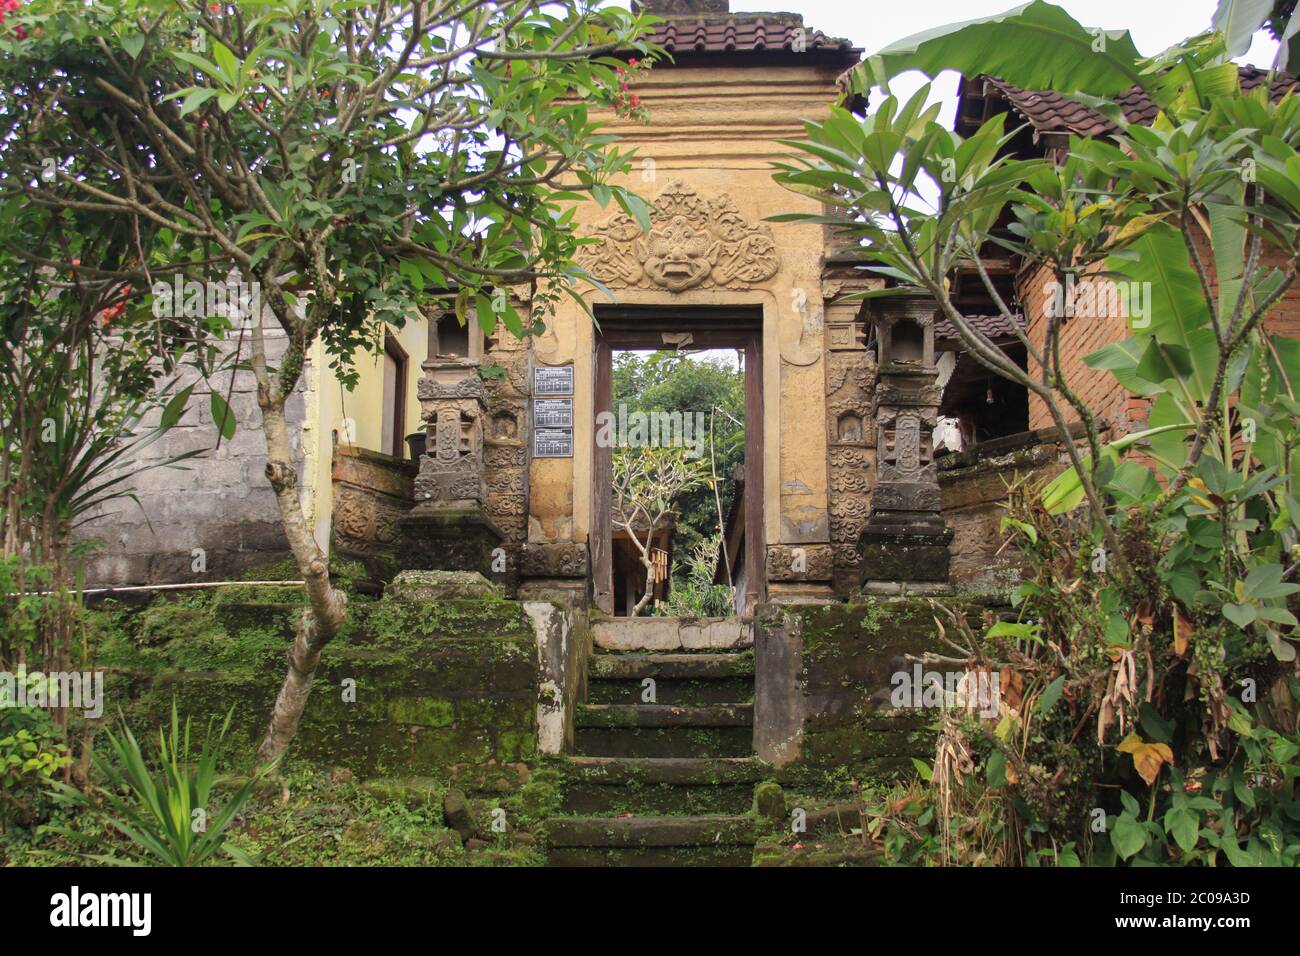 Tür oder Tor, um in traditionelle balinesische Gartenarchitektur Detail zu betreten. Offener Pavillon oder lokaler Pavillon namens Bale im Garten. Reise-ph Stockfoto